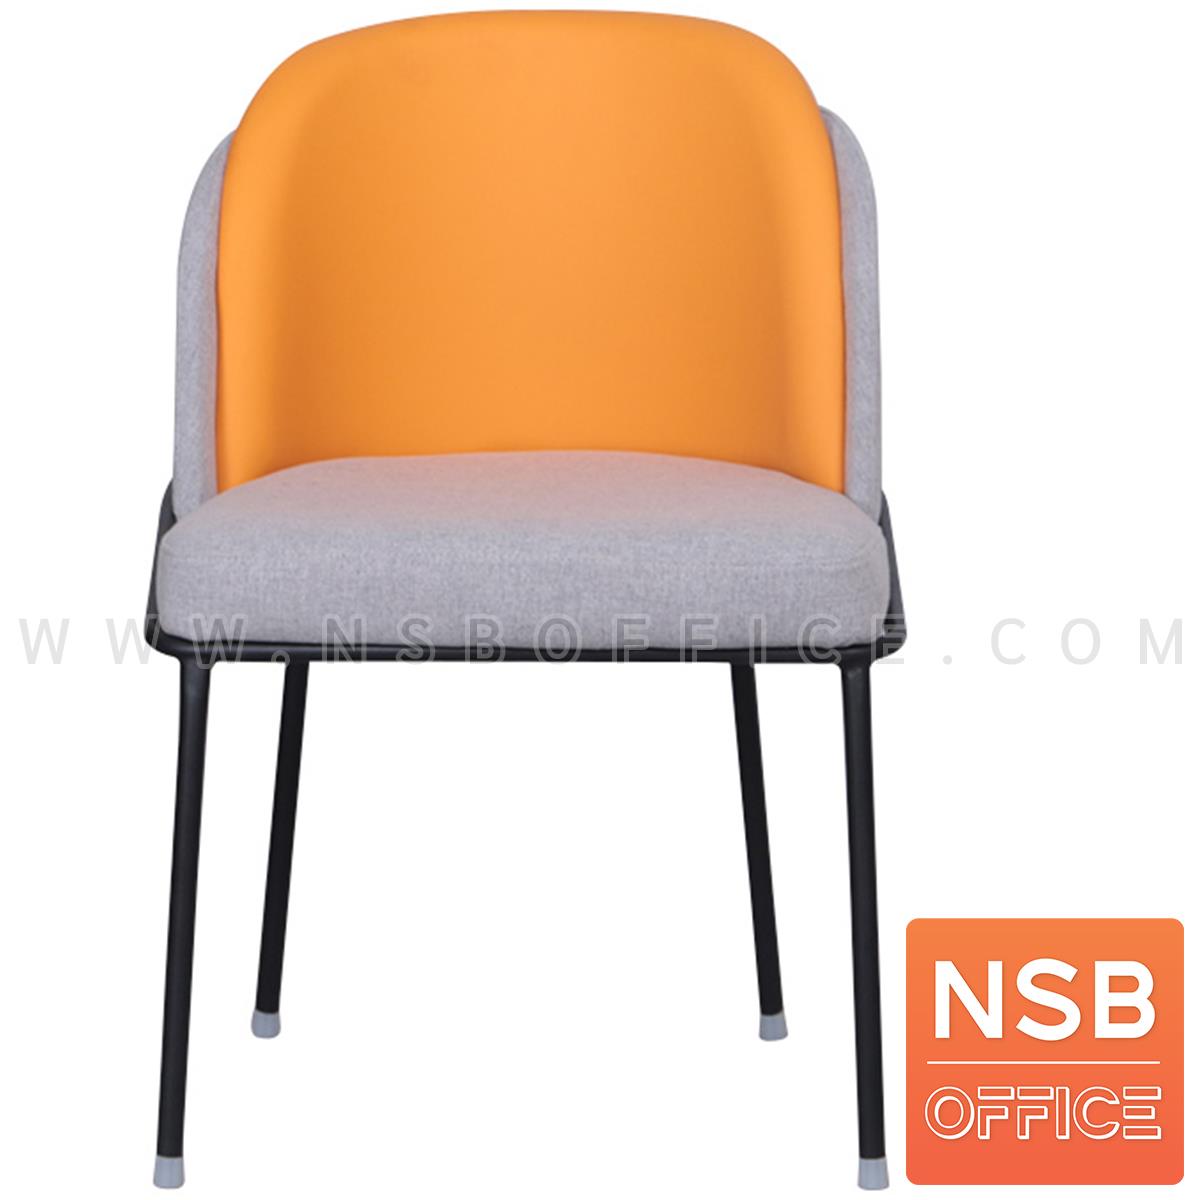 เก้าอี้โมเดิร์นหุ้มผ้า รุ่น Carrot (แครรอท)  โครงขาเหล็ก